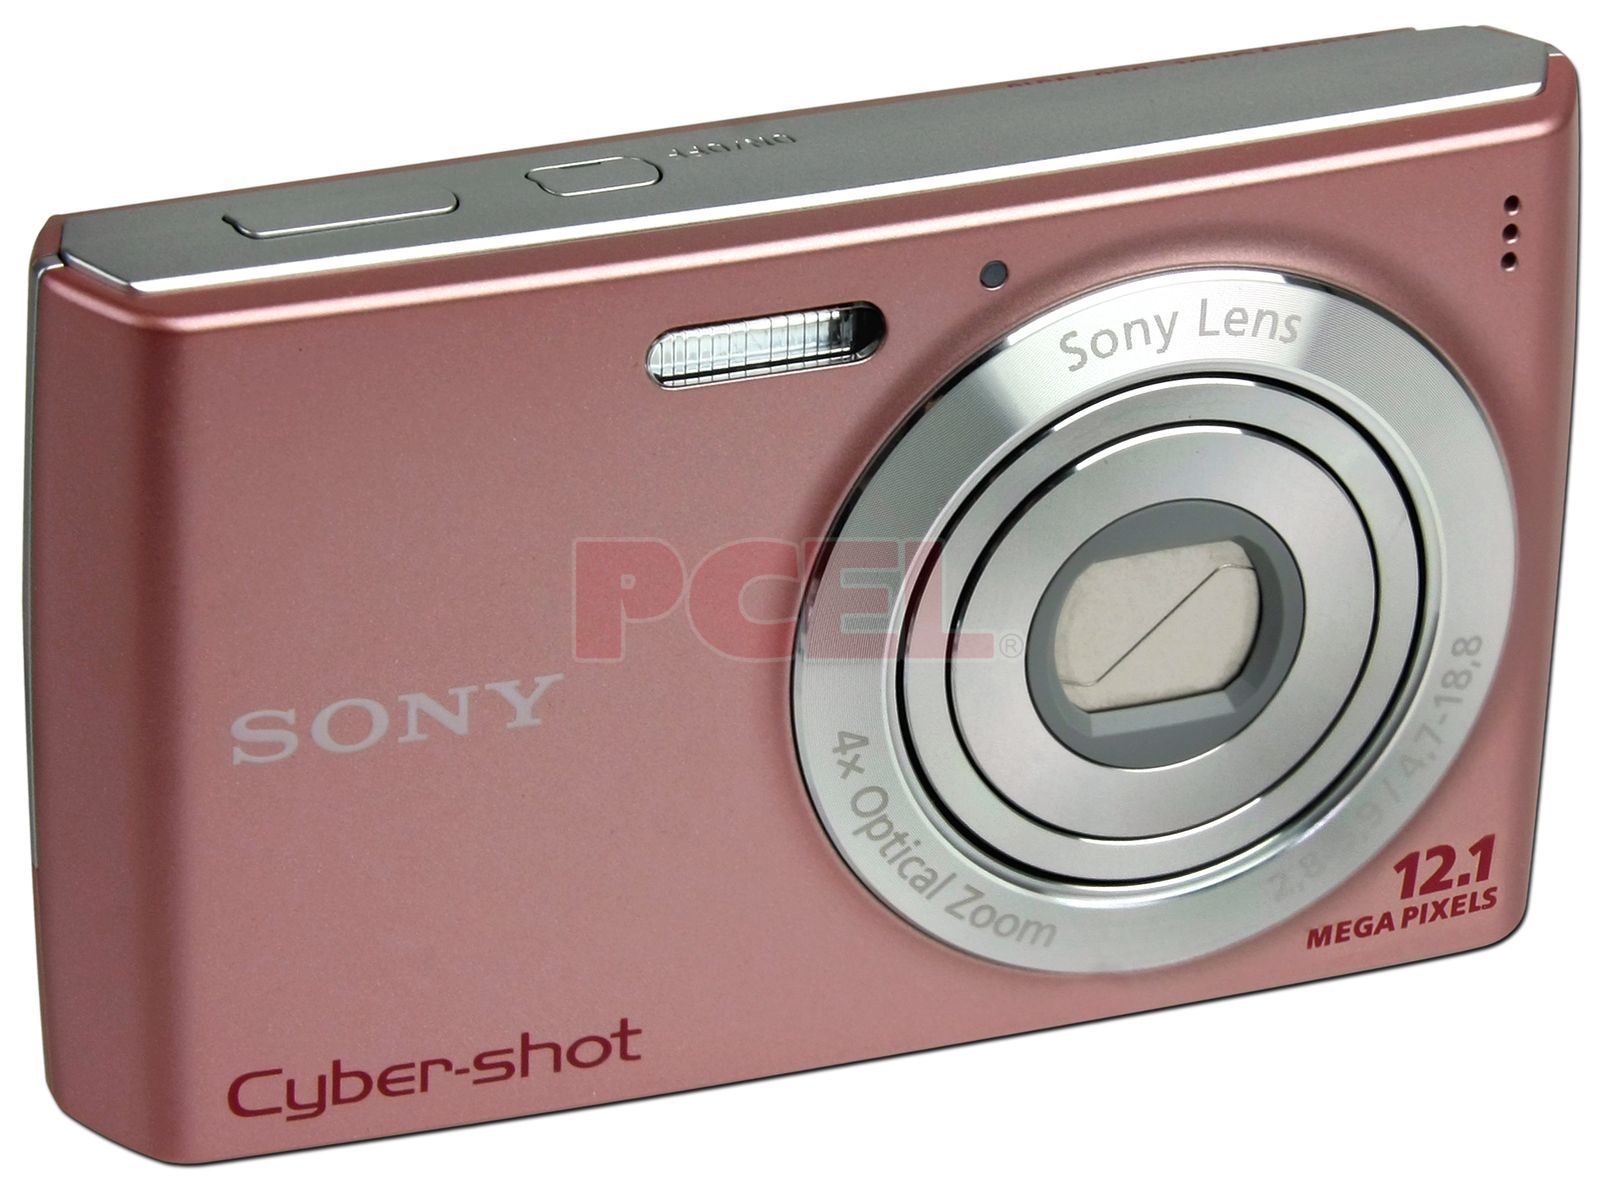 Cámara Digital Sony CyberShot DSC-W510, 12.1 Mpx, Zoom Óptico 4x, LCD 2.7  - DSC-W510/P